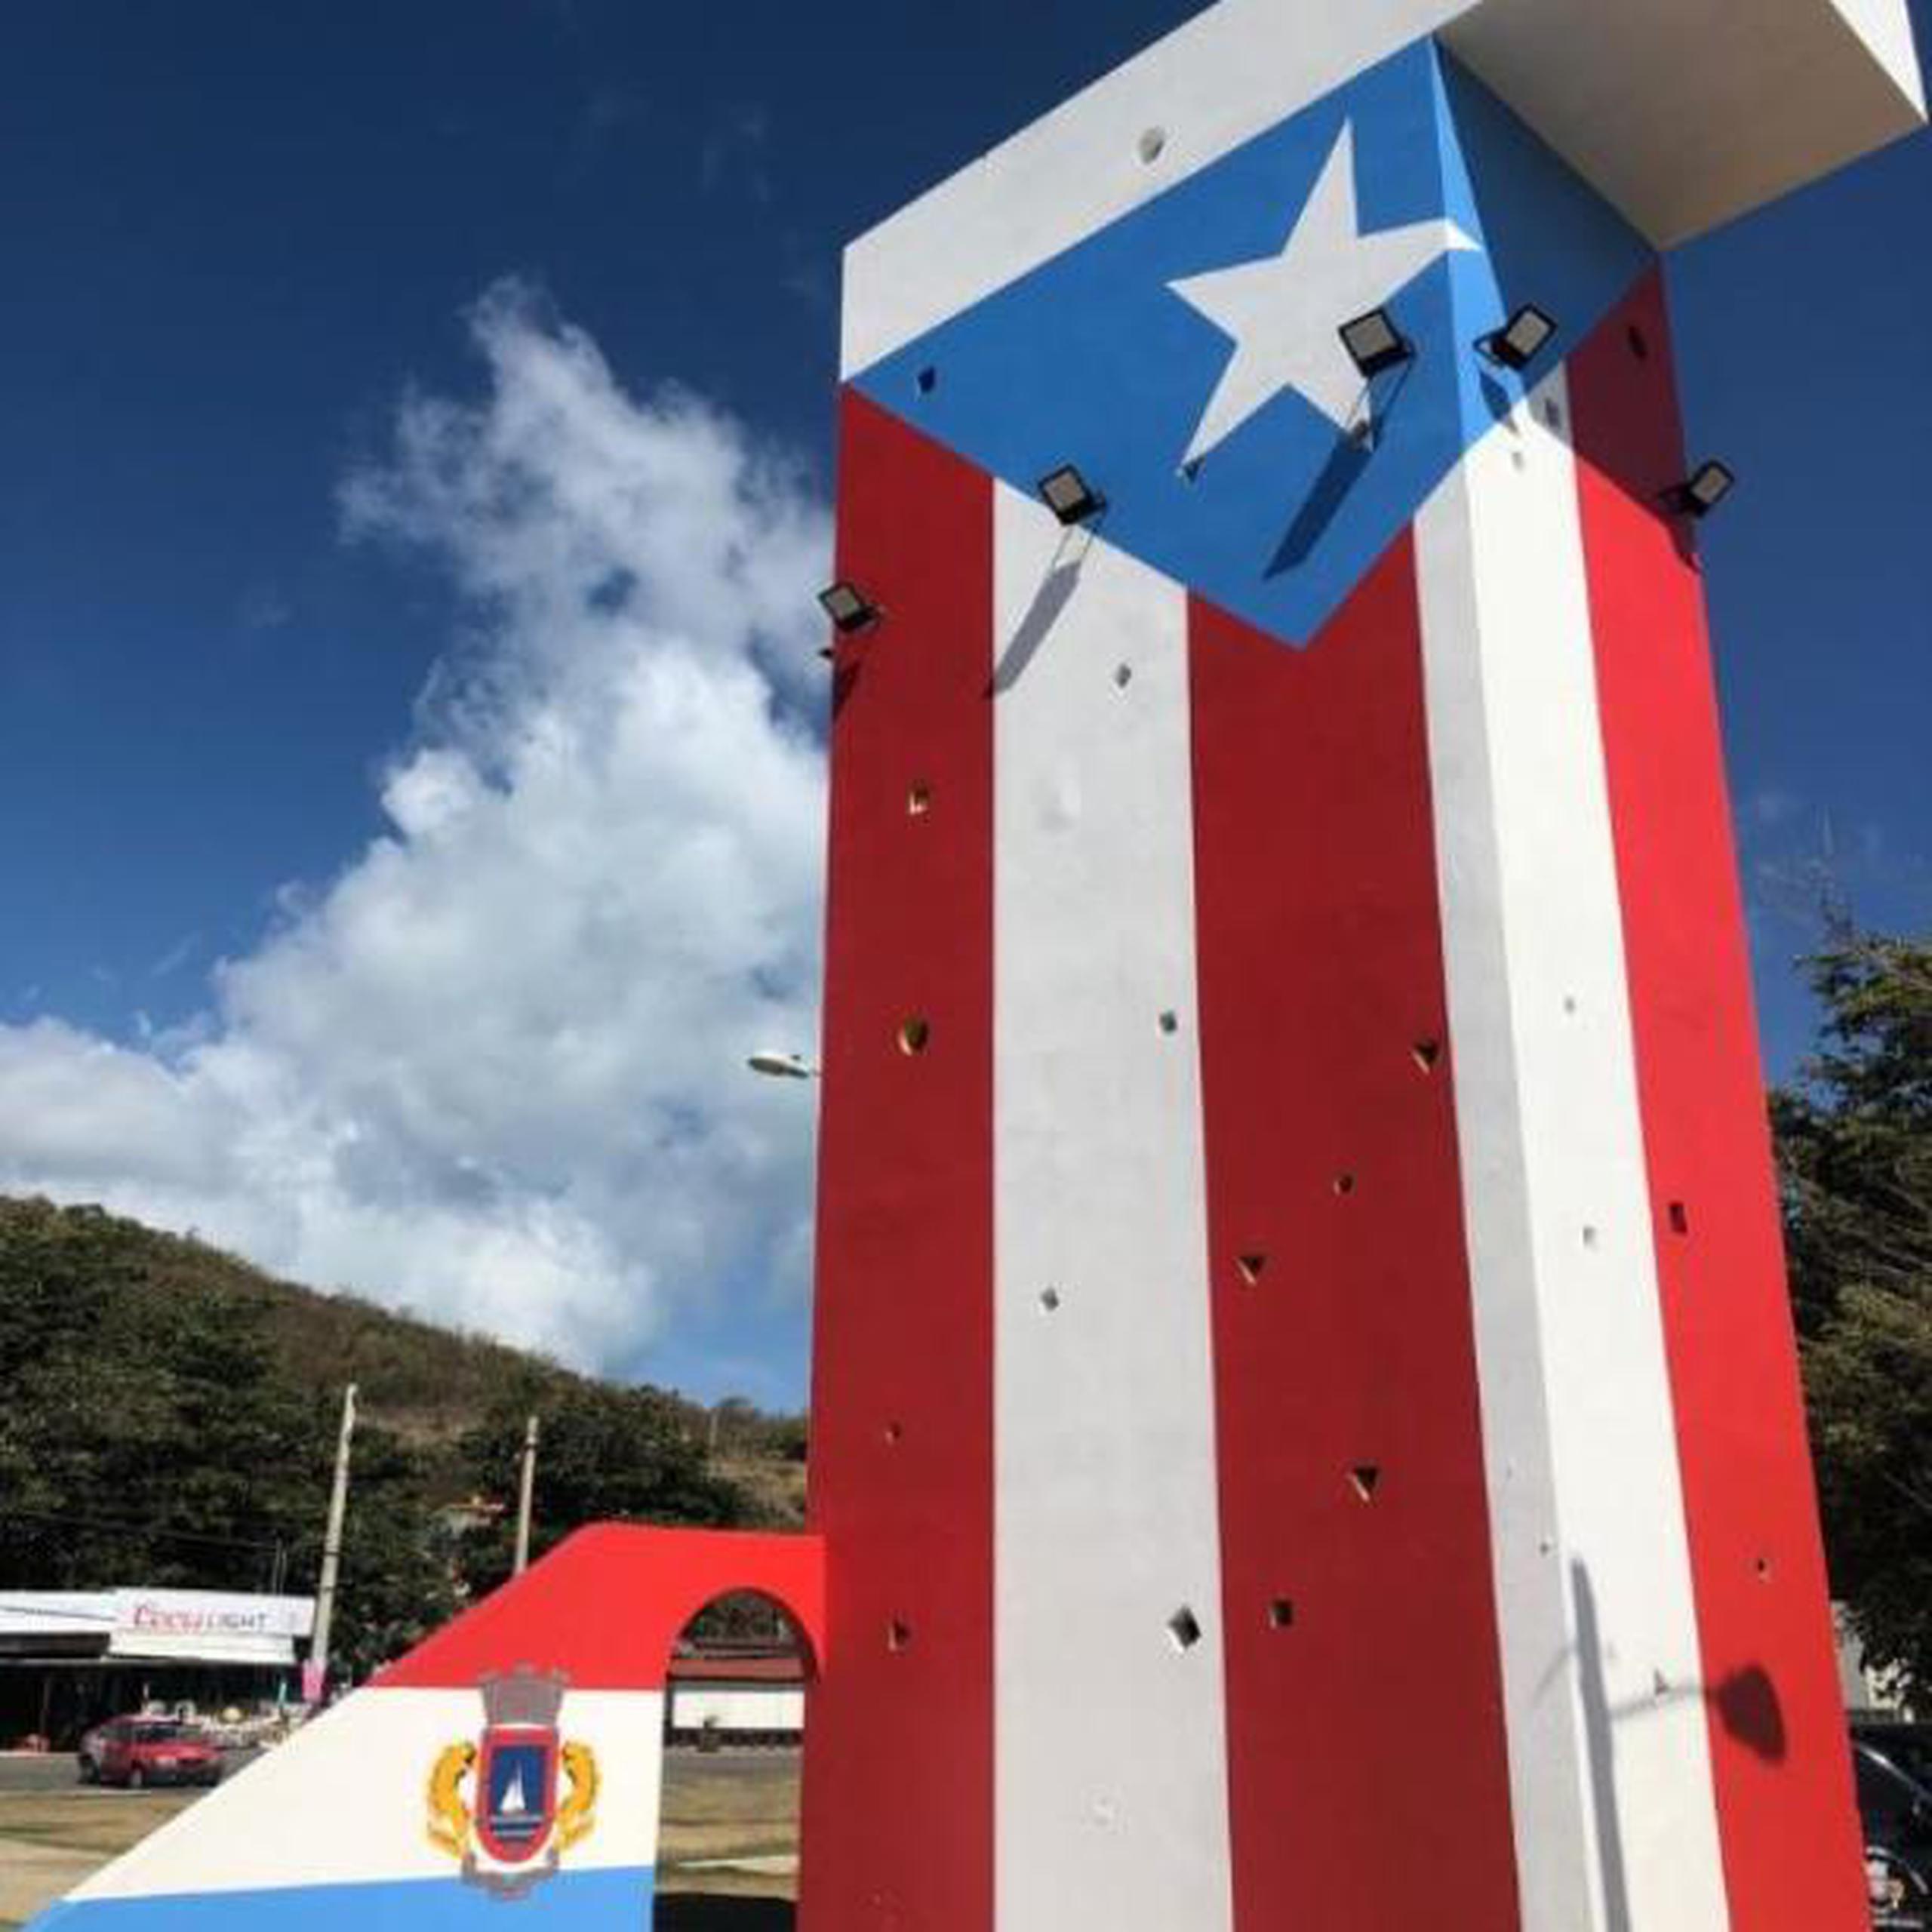 La actividad fue la culminación de una semana de trabajo, donde empleados del Departamento de Transportación y Obras Públicas del Municipio de Fajardo tuvieron en sus manos la restauración de esta imponente bandera. (Cesiach López / Para Primera Hora)